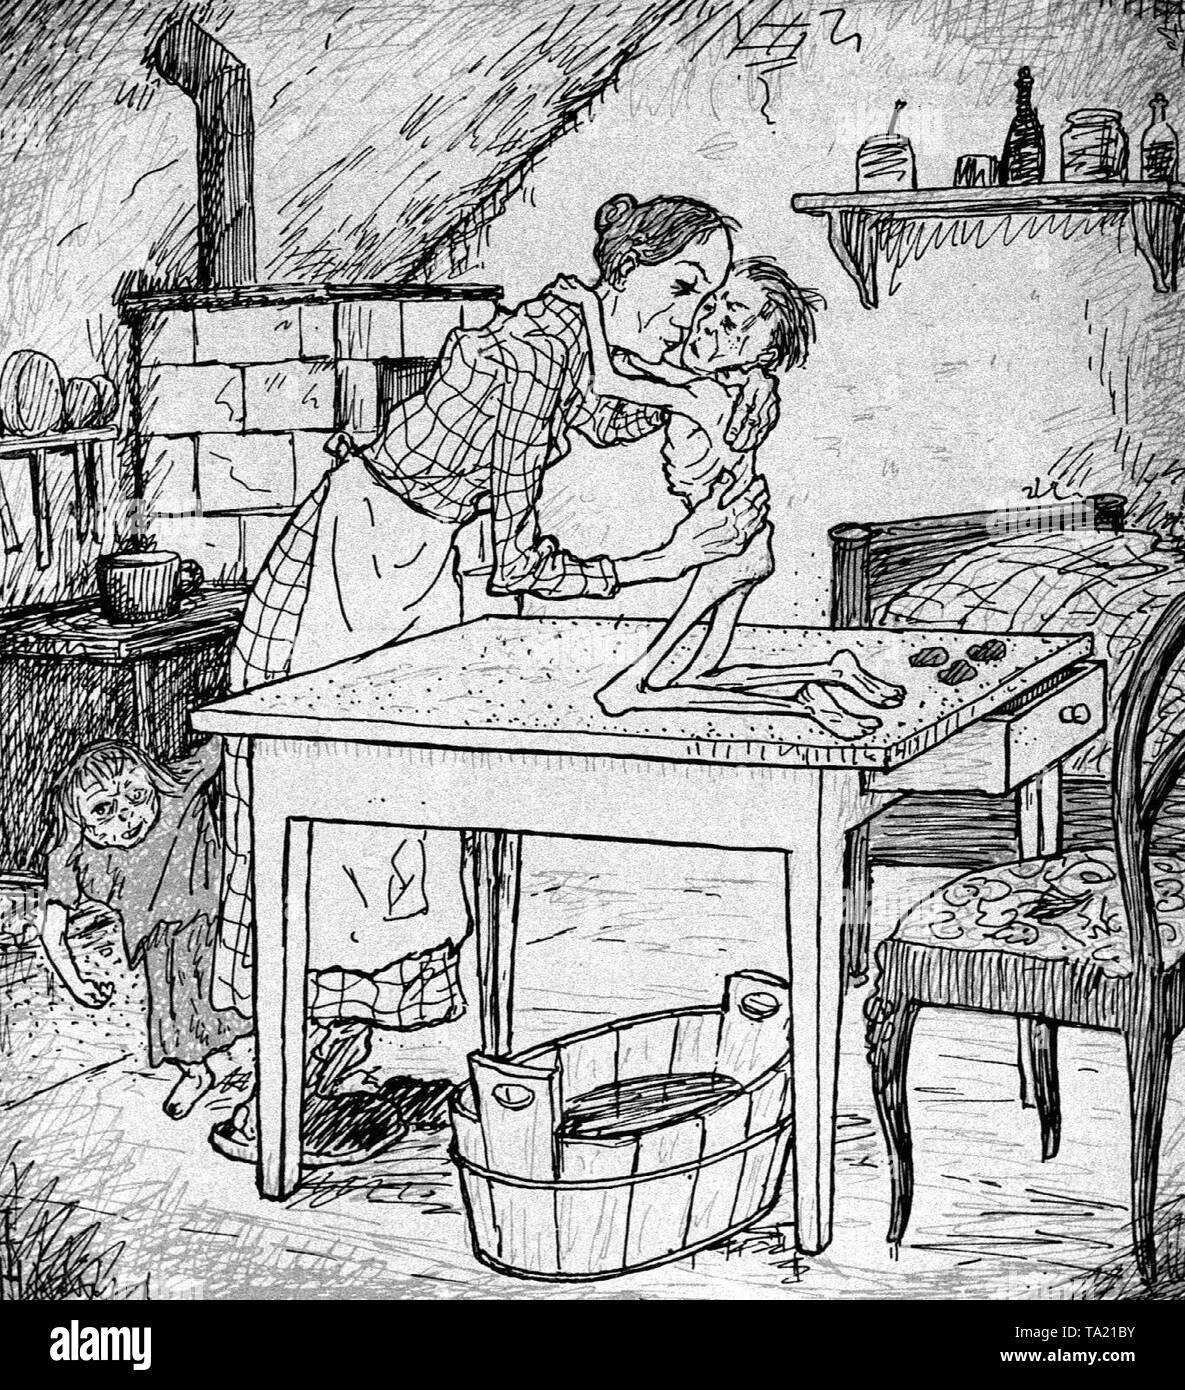 Eine Karikatur des Künstlers Trost auf Reparationen der Vertrag von Versailles in der 'Simplicissimus', die in der Ausgabe vom 24.06. 1919. Text: "Warte nur, sobald wir geliefert haben Hunderte von Milliarden, können wir wieder Essen". Stockfoto